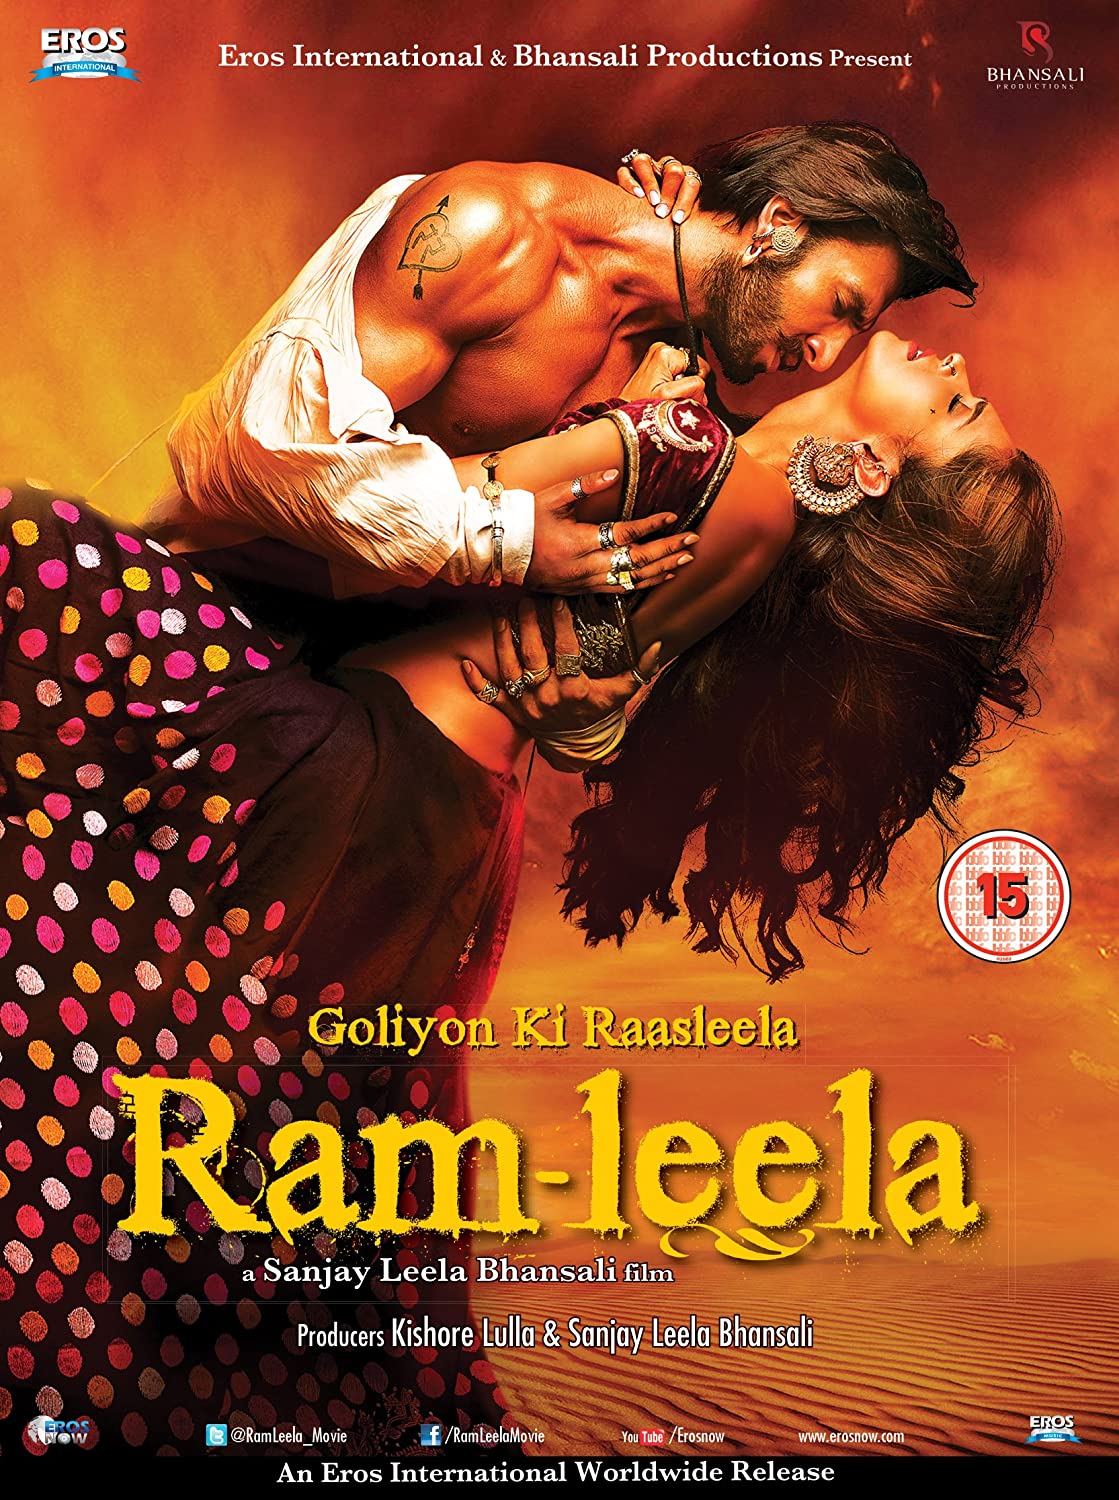 Goliyon Ki Raasleela RAM LEELA DVD 2013 OFFICIAL 2 DISC COLLECTORS EDITION: Amazon.ca: DVD